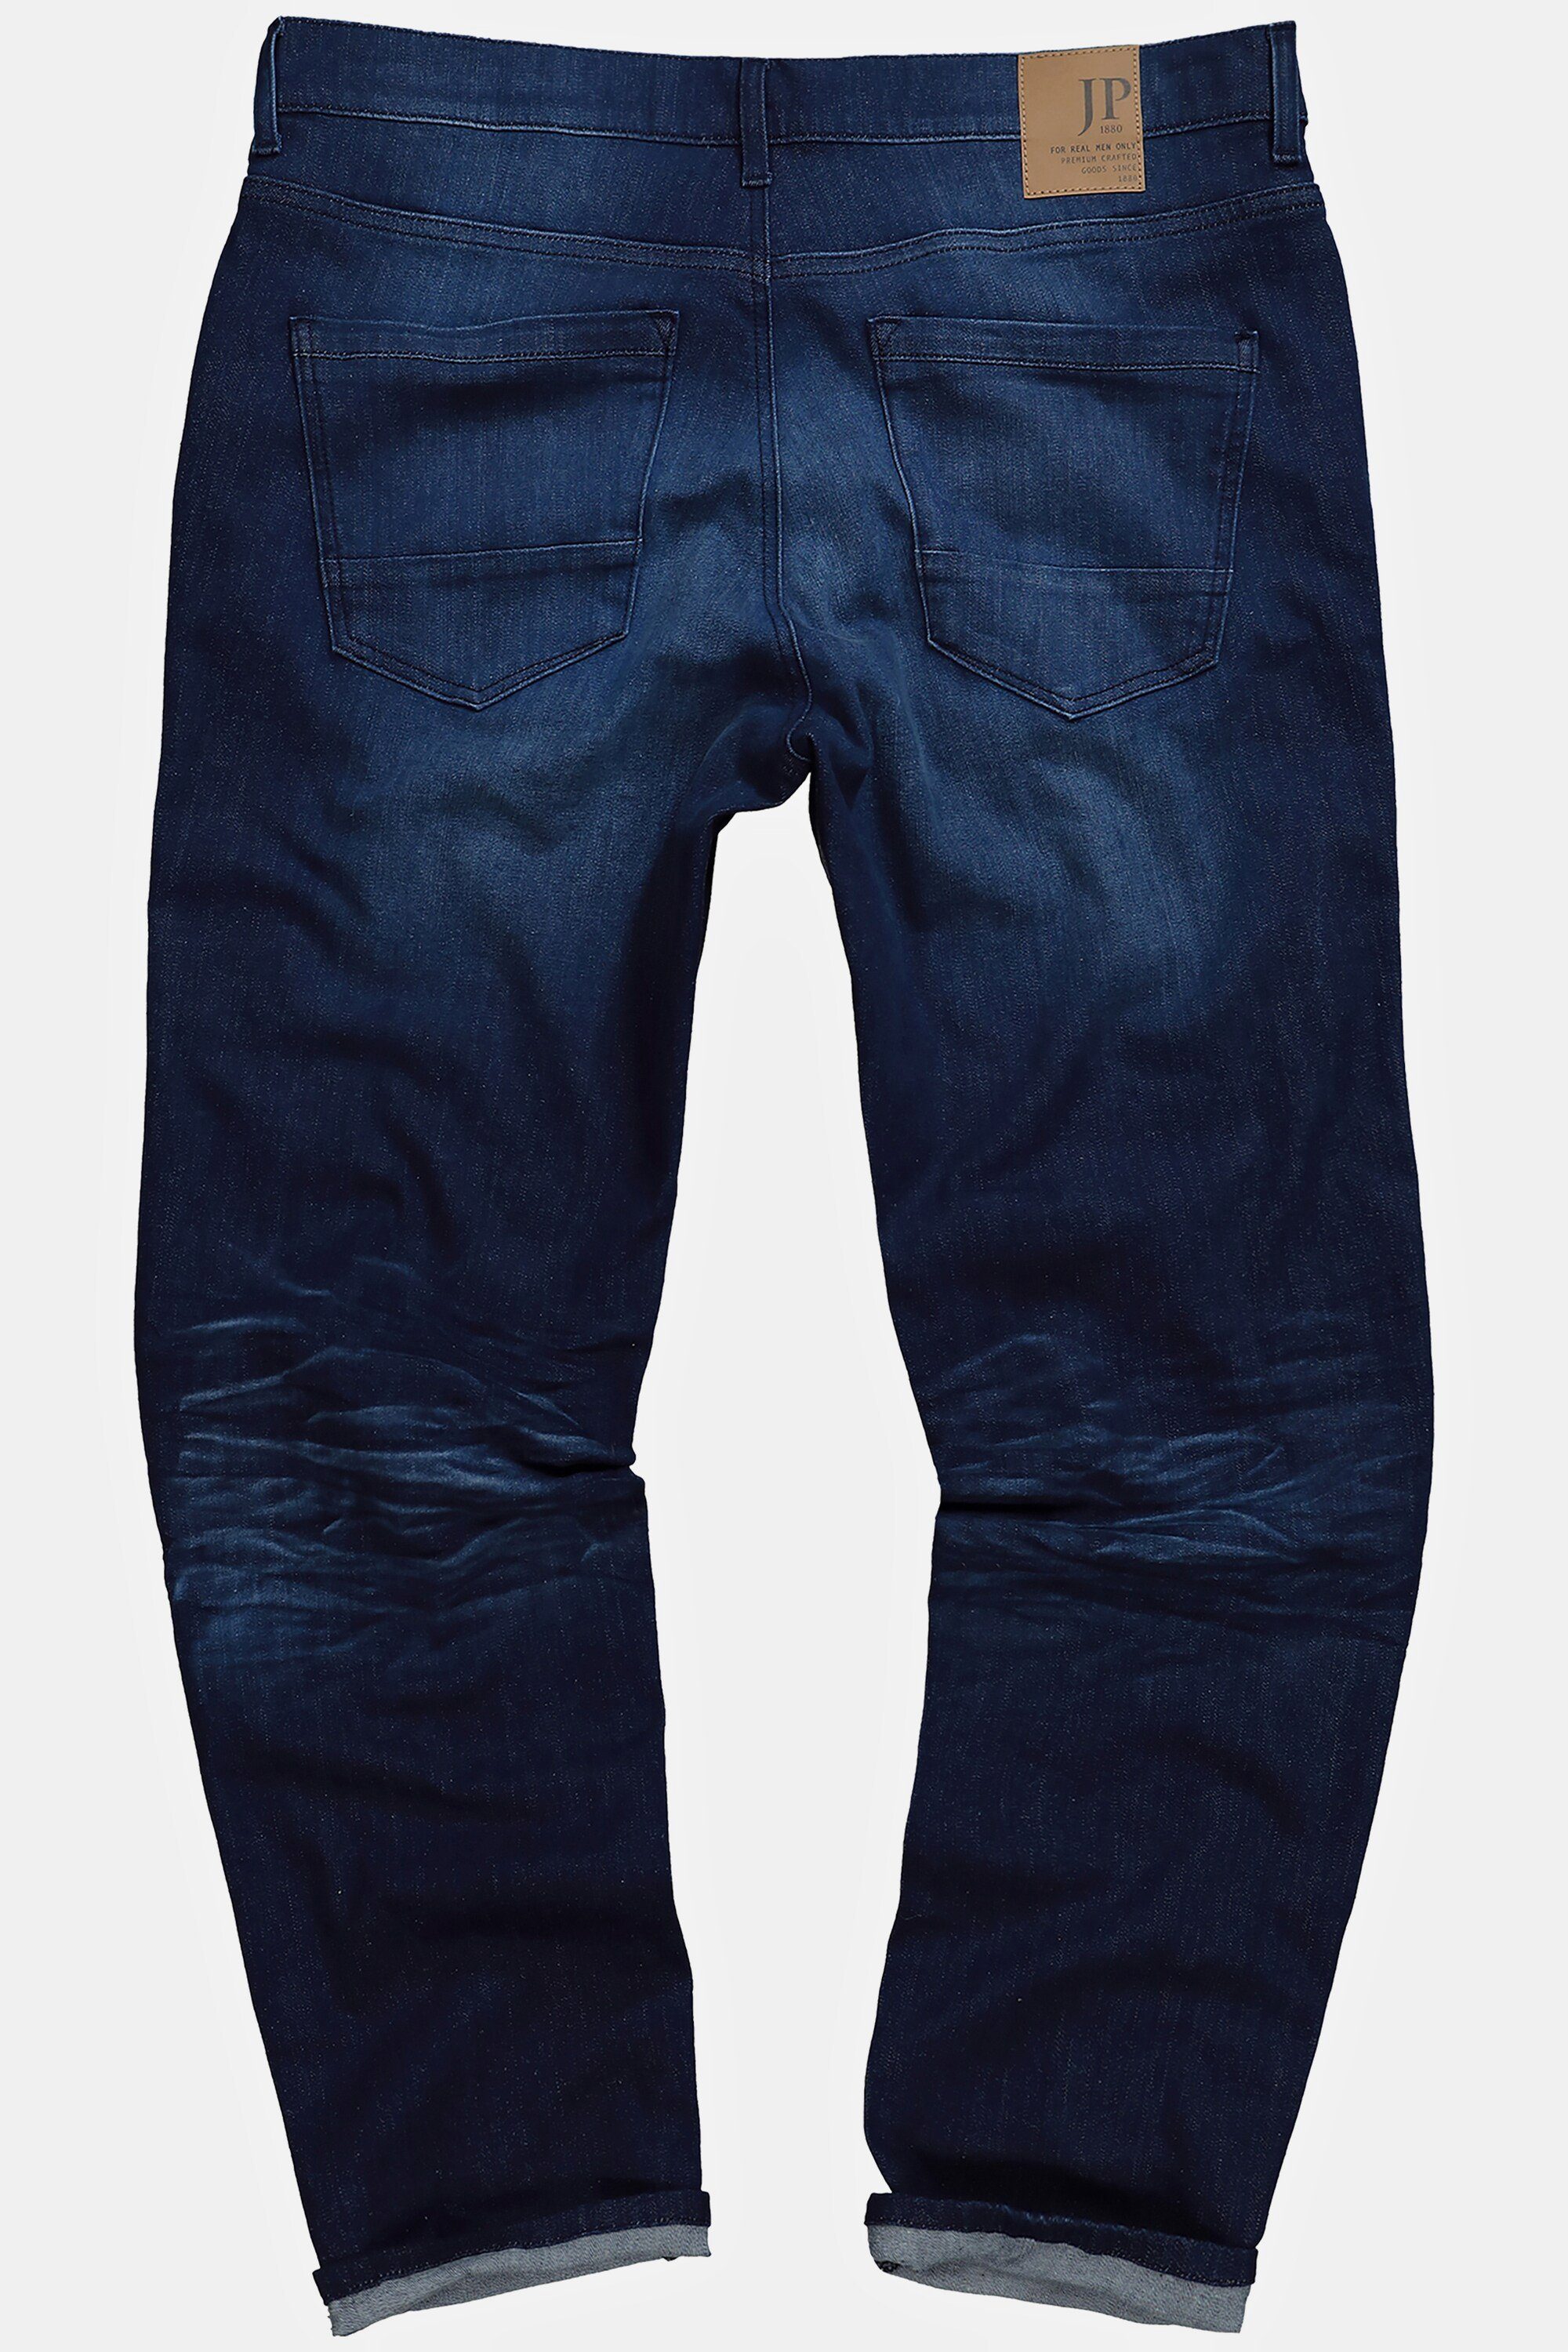 JP1880 Look denim Loose Fit Jeans blue 5-Pocket-Jeans Vintage Tapered Denim